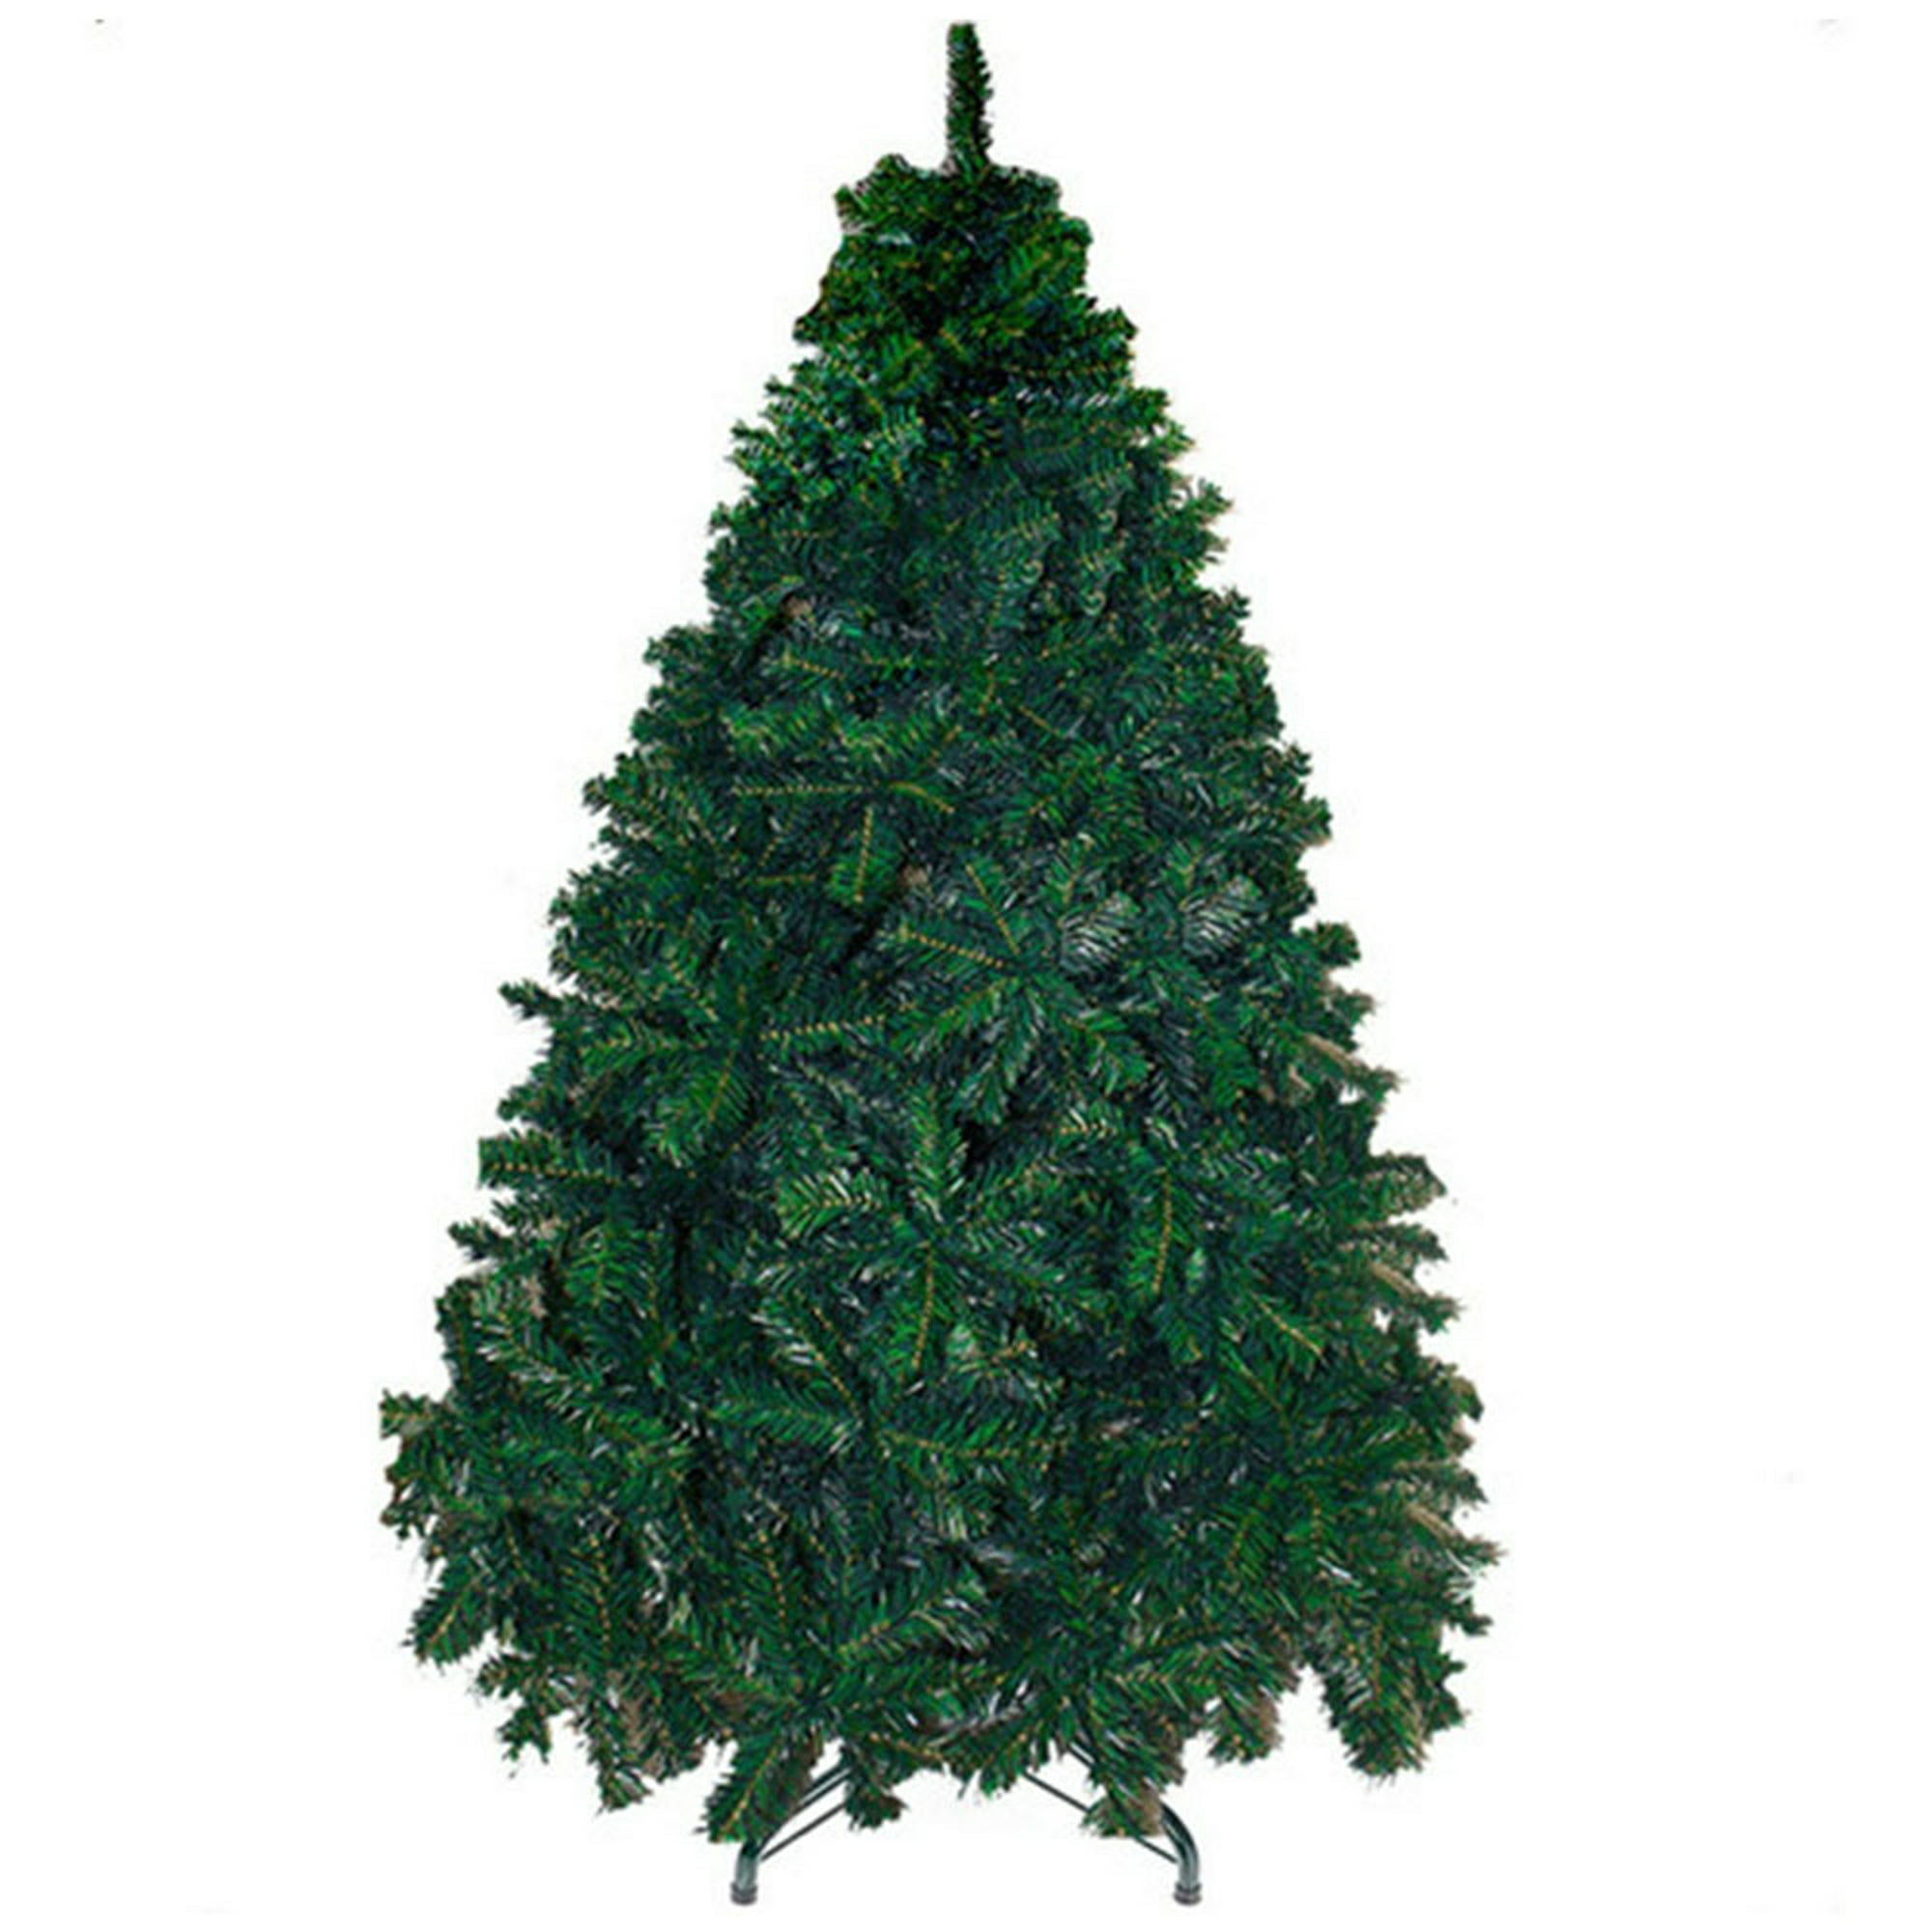 Arbol navidad verde 160 cm jardimex pino artificial follaje frondoso